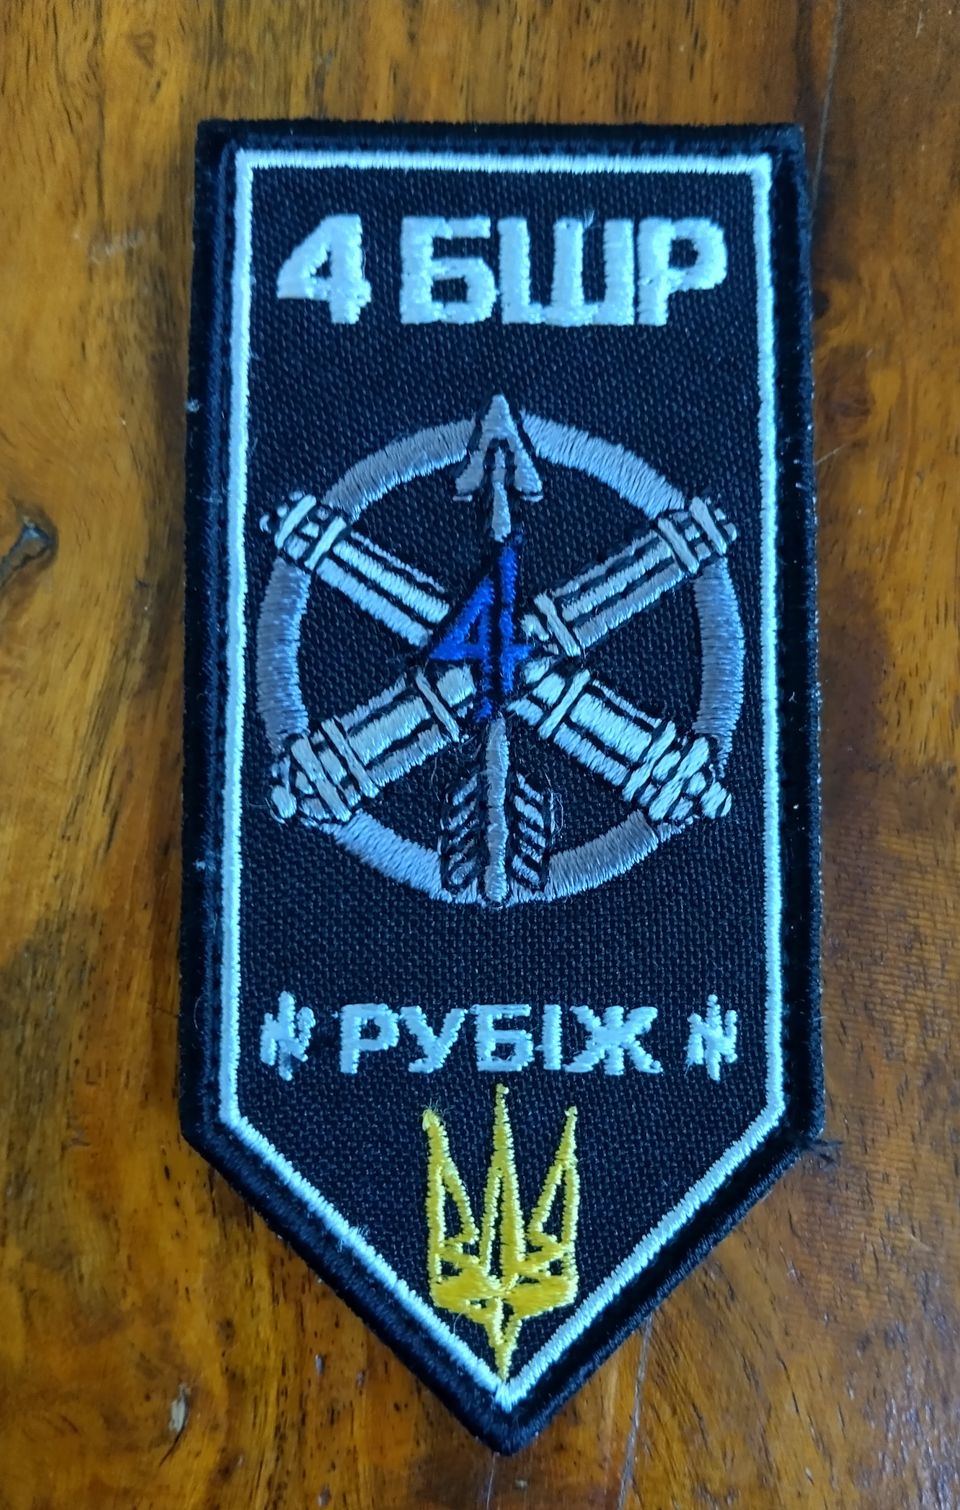 Ukraina - Nopean Toiminnan "Rubizh"-Prikaatin hihamerkki